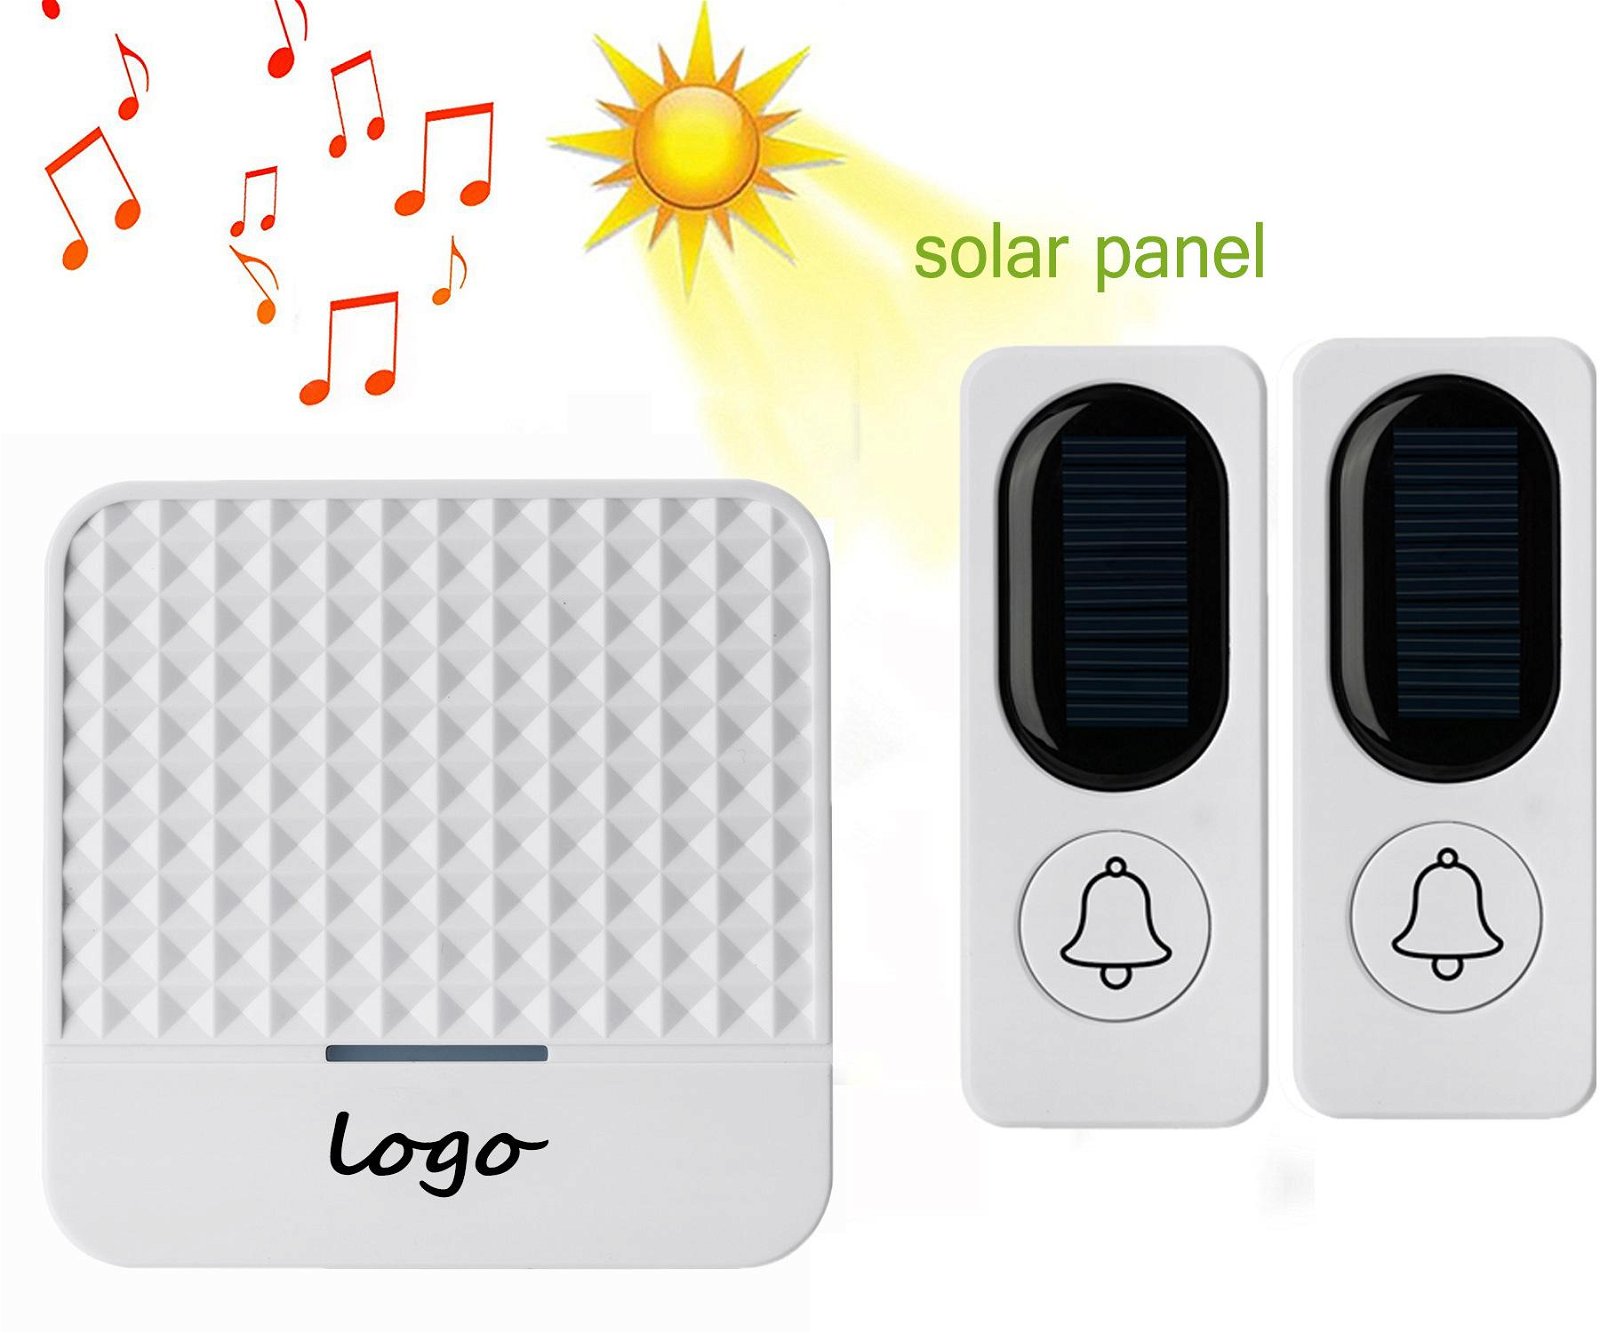 Solar waterproof doorbell alarm certified FCC-ID 4